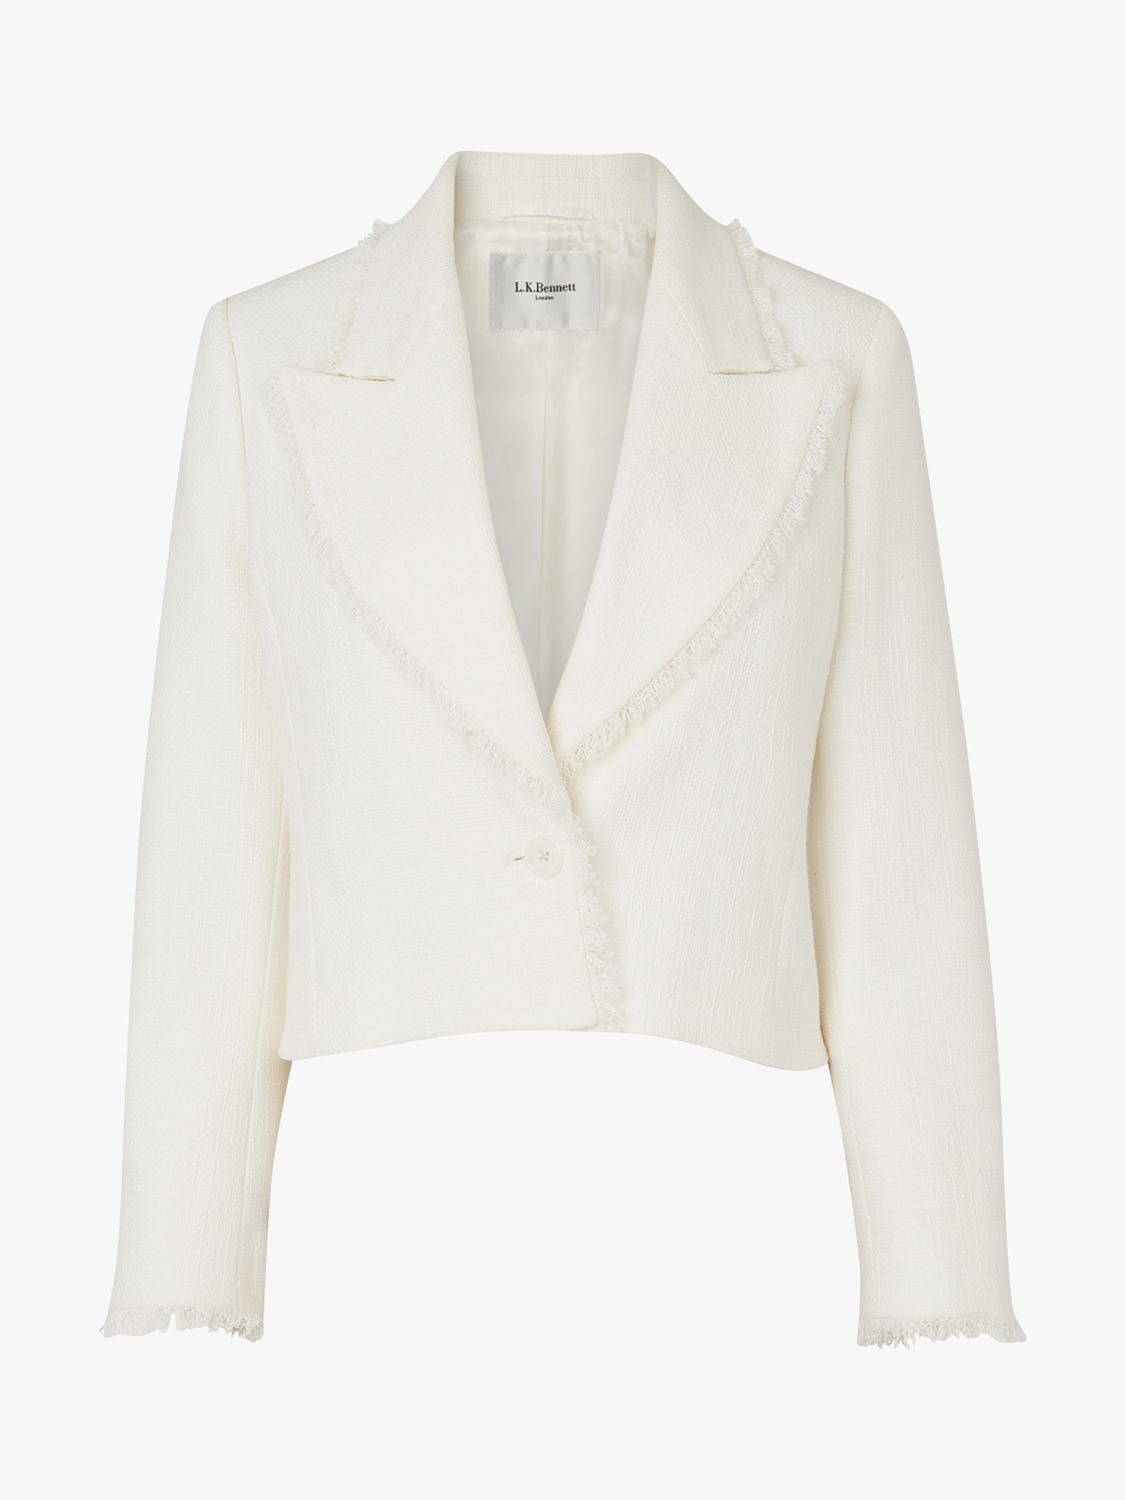 L.K Bennett Ellen Tweed Jacket, Cream